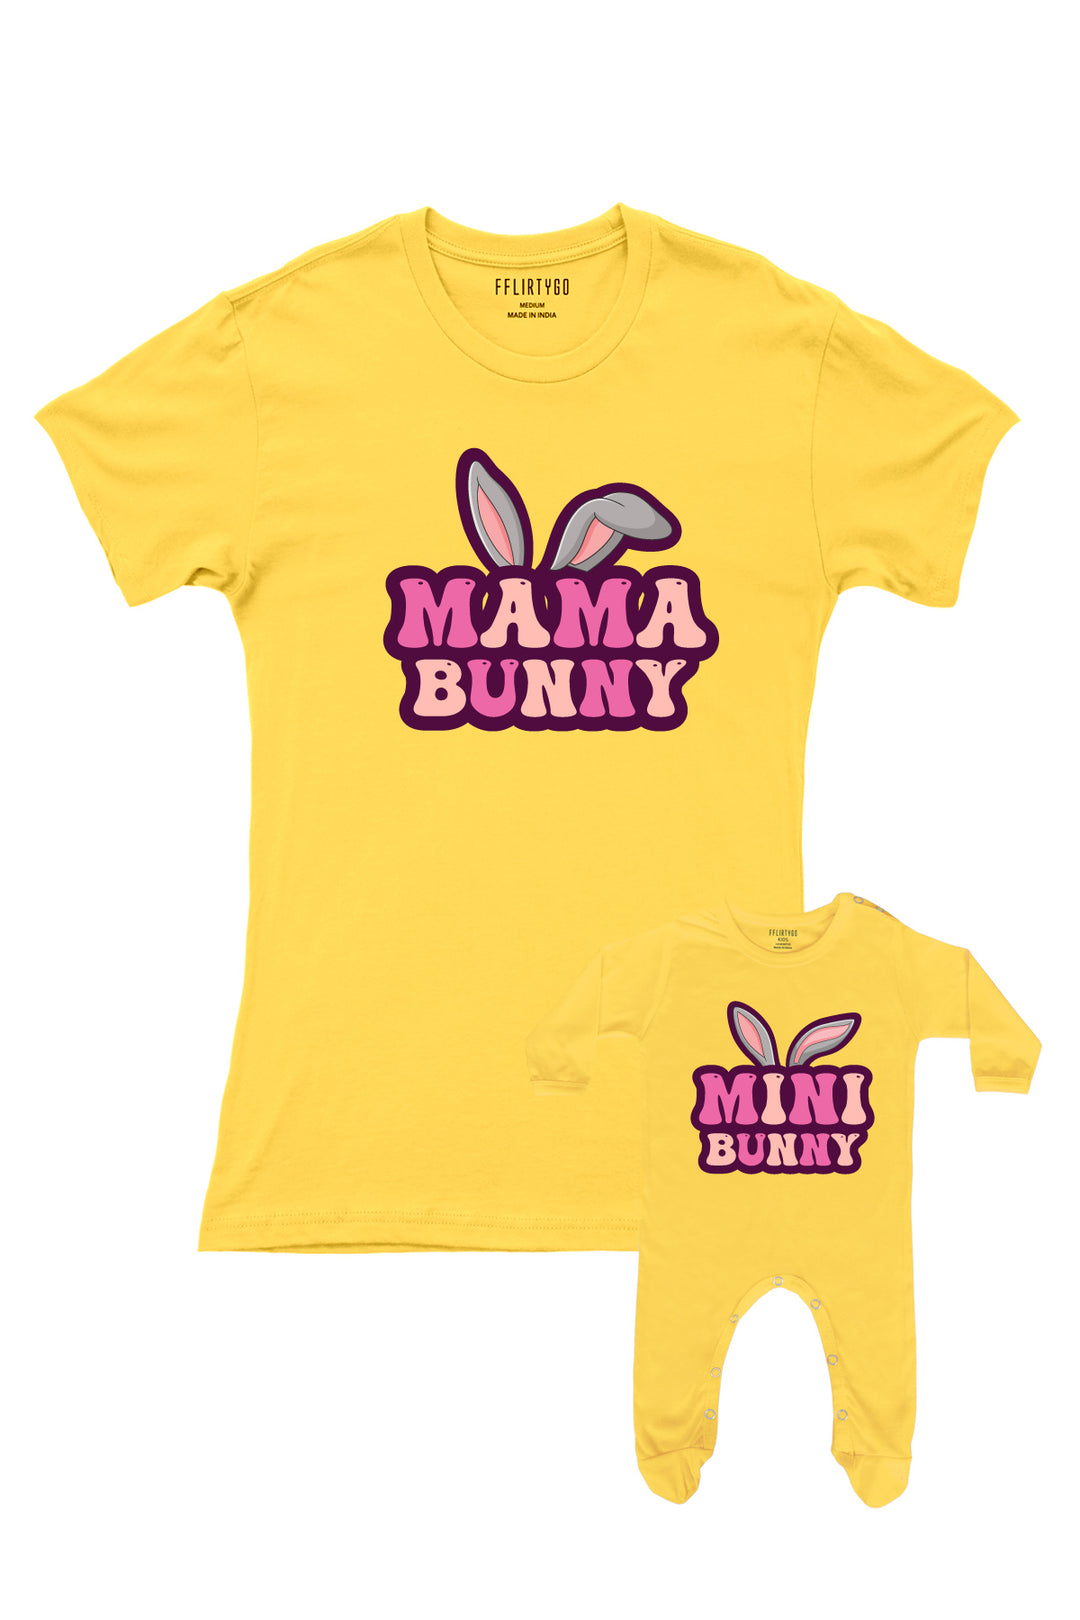 Mama Bunny - Mini Bunny